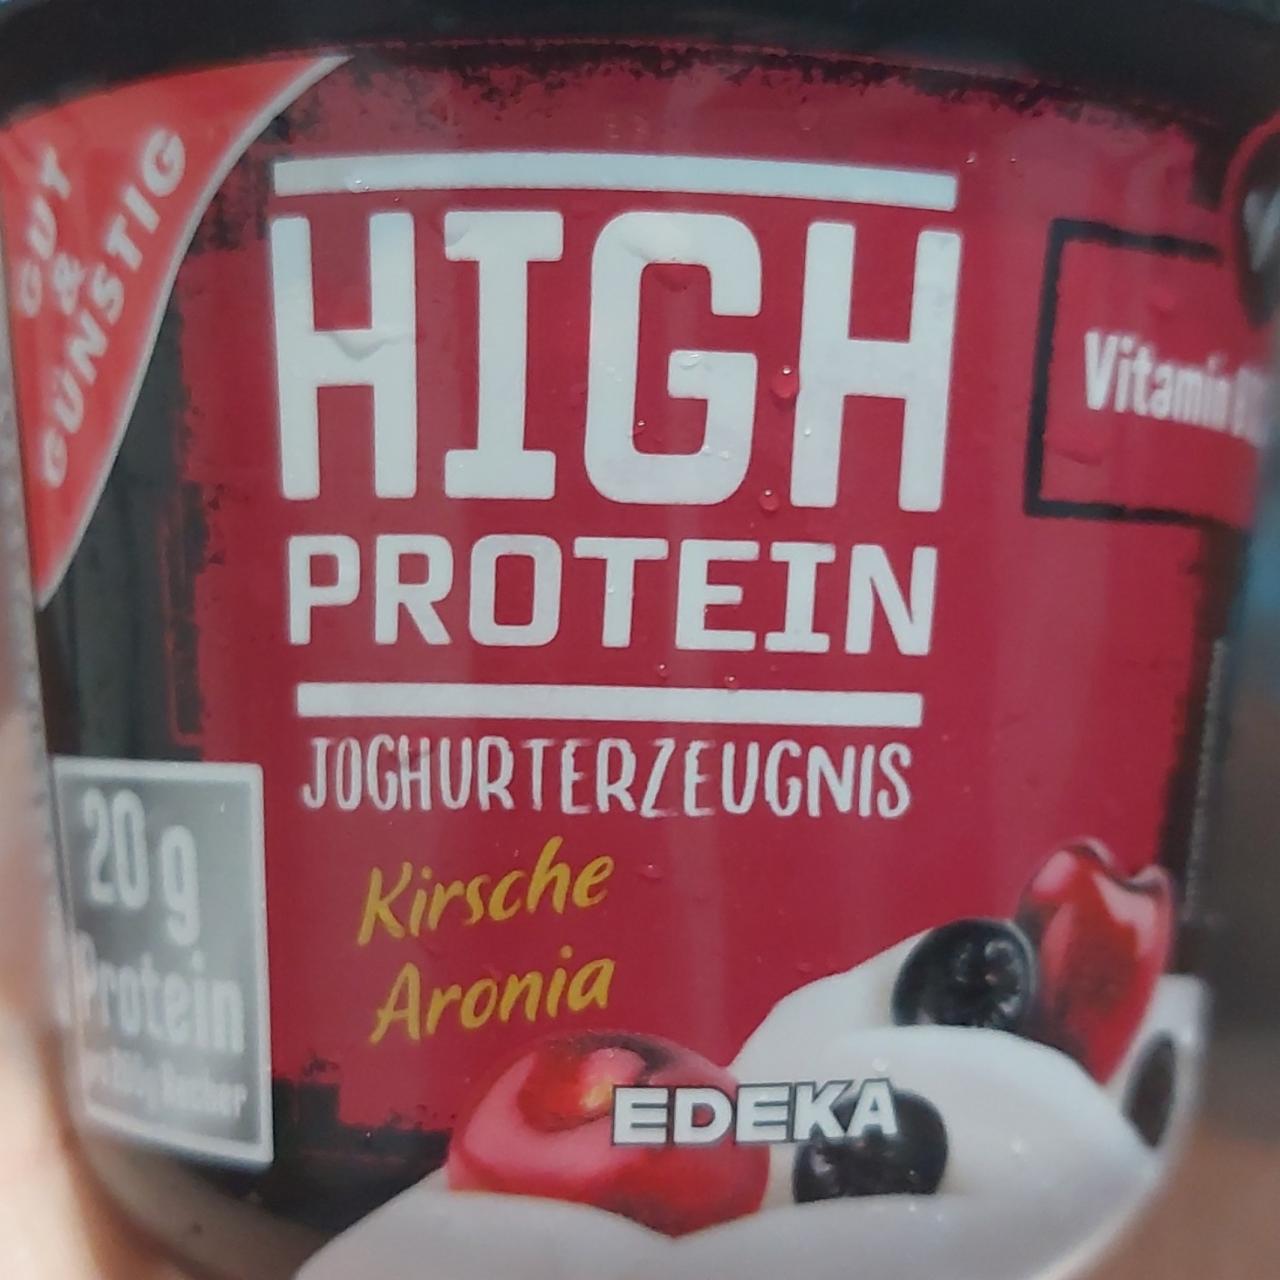 Фото - йогурт протеиновый со вкусом рябины и черешни Gut&Gunstig